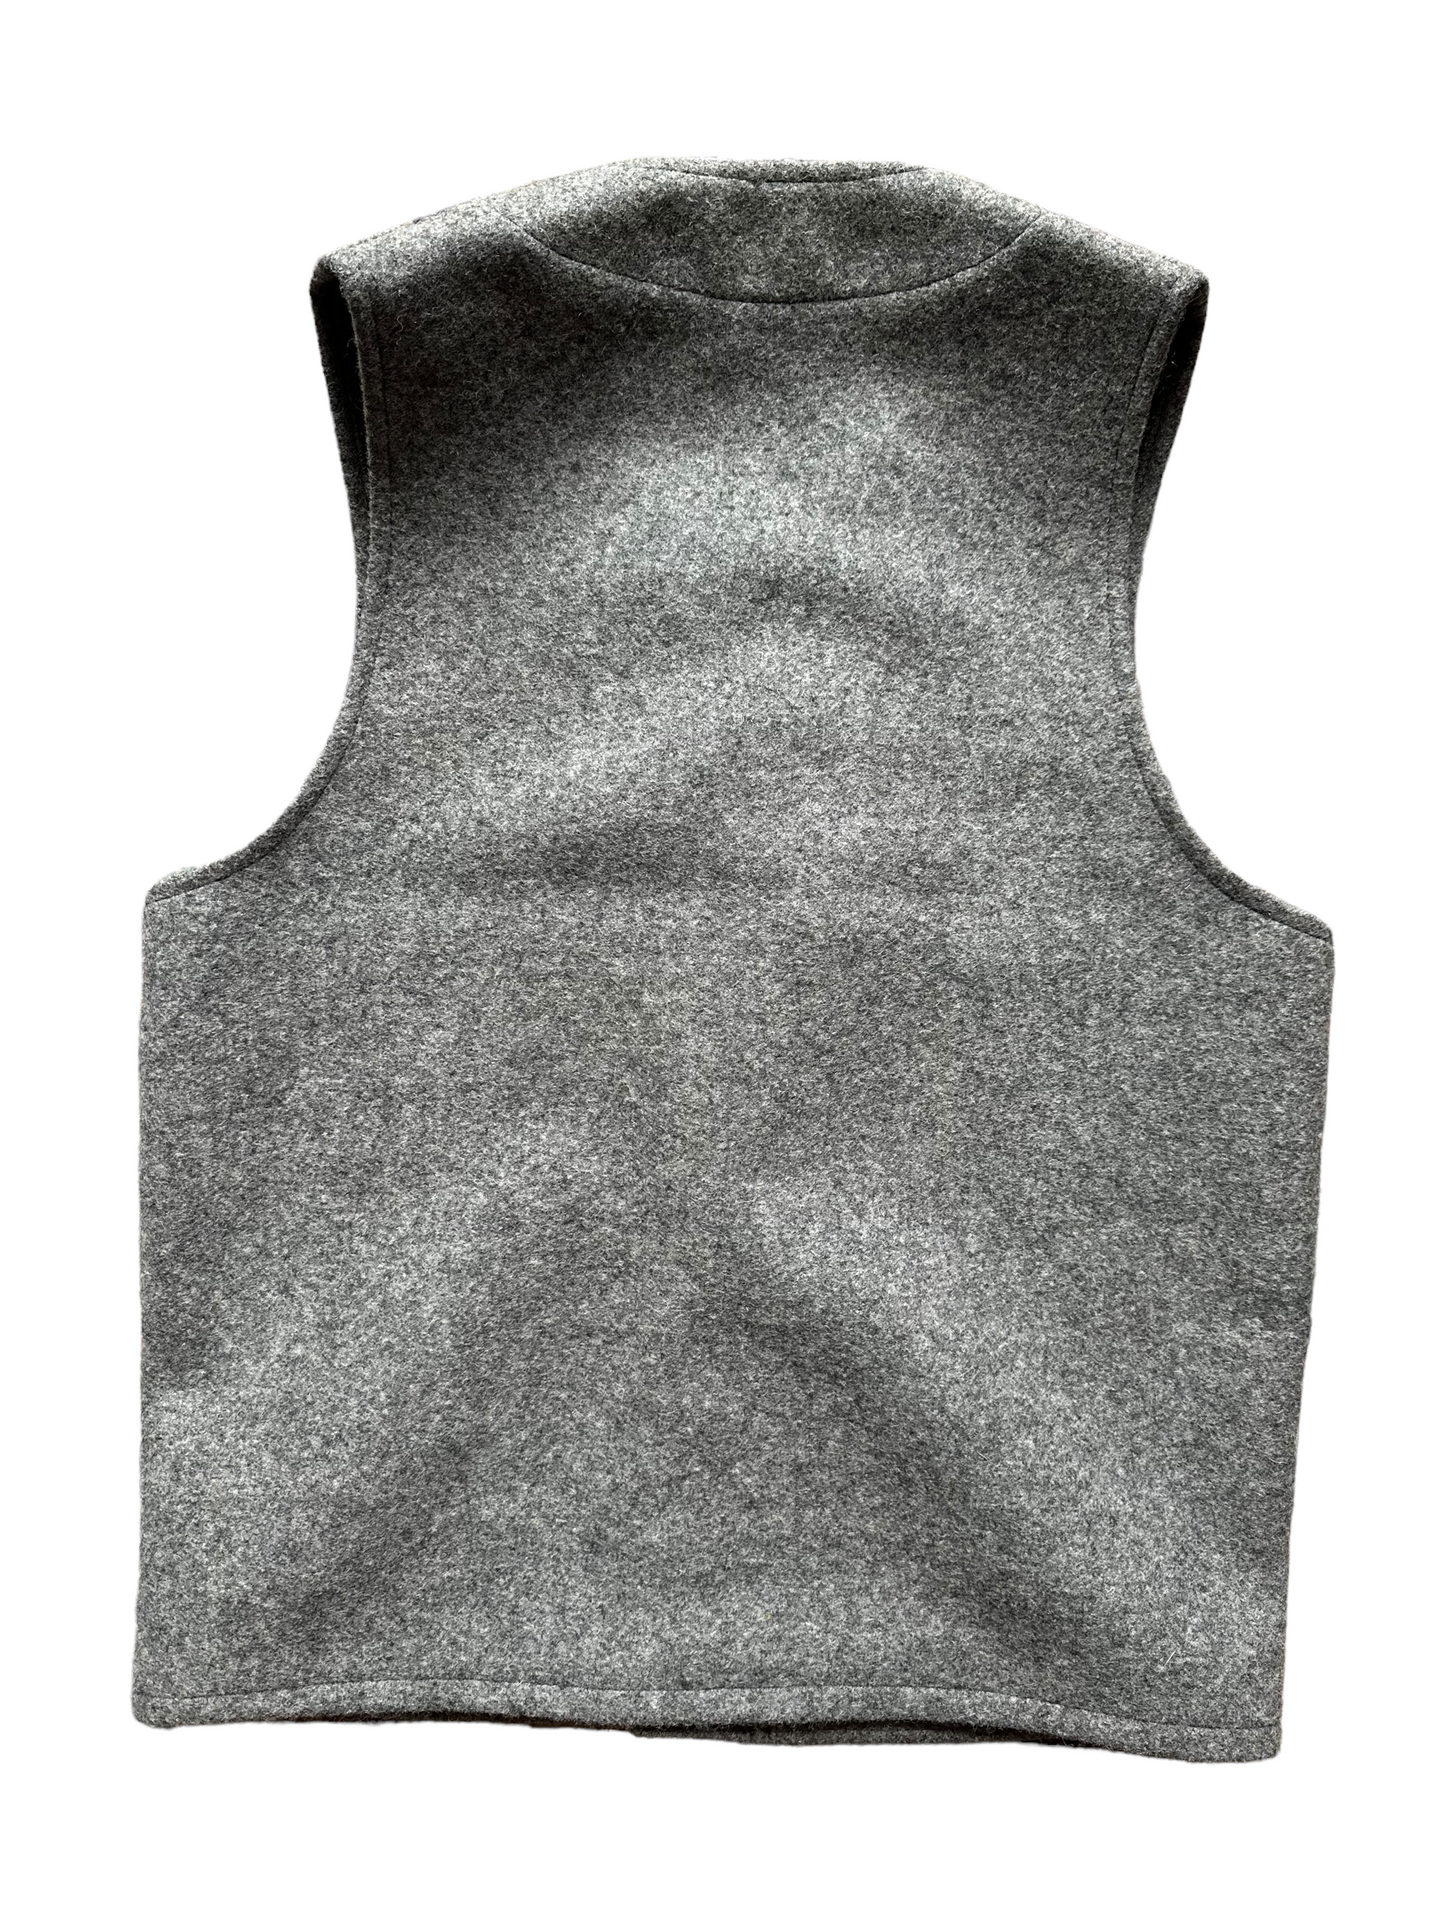 Rear View of Vintage Filson Mackinaw Vest SZ 36 |  Grey Wool Vest | Seattle Vintage Workwear